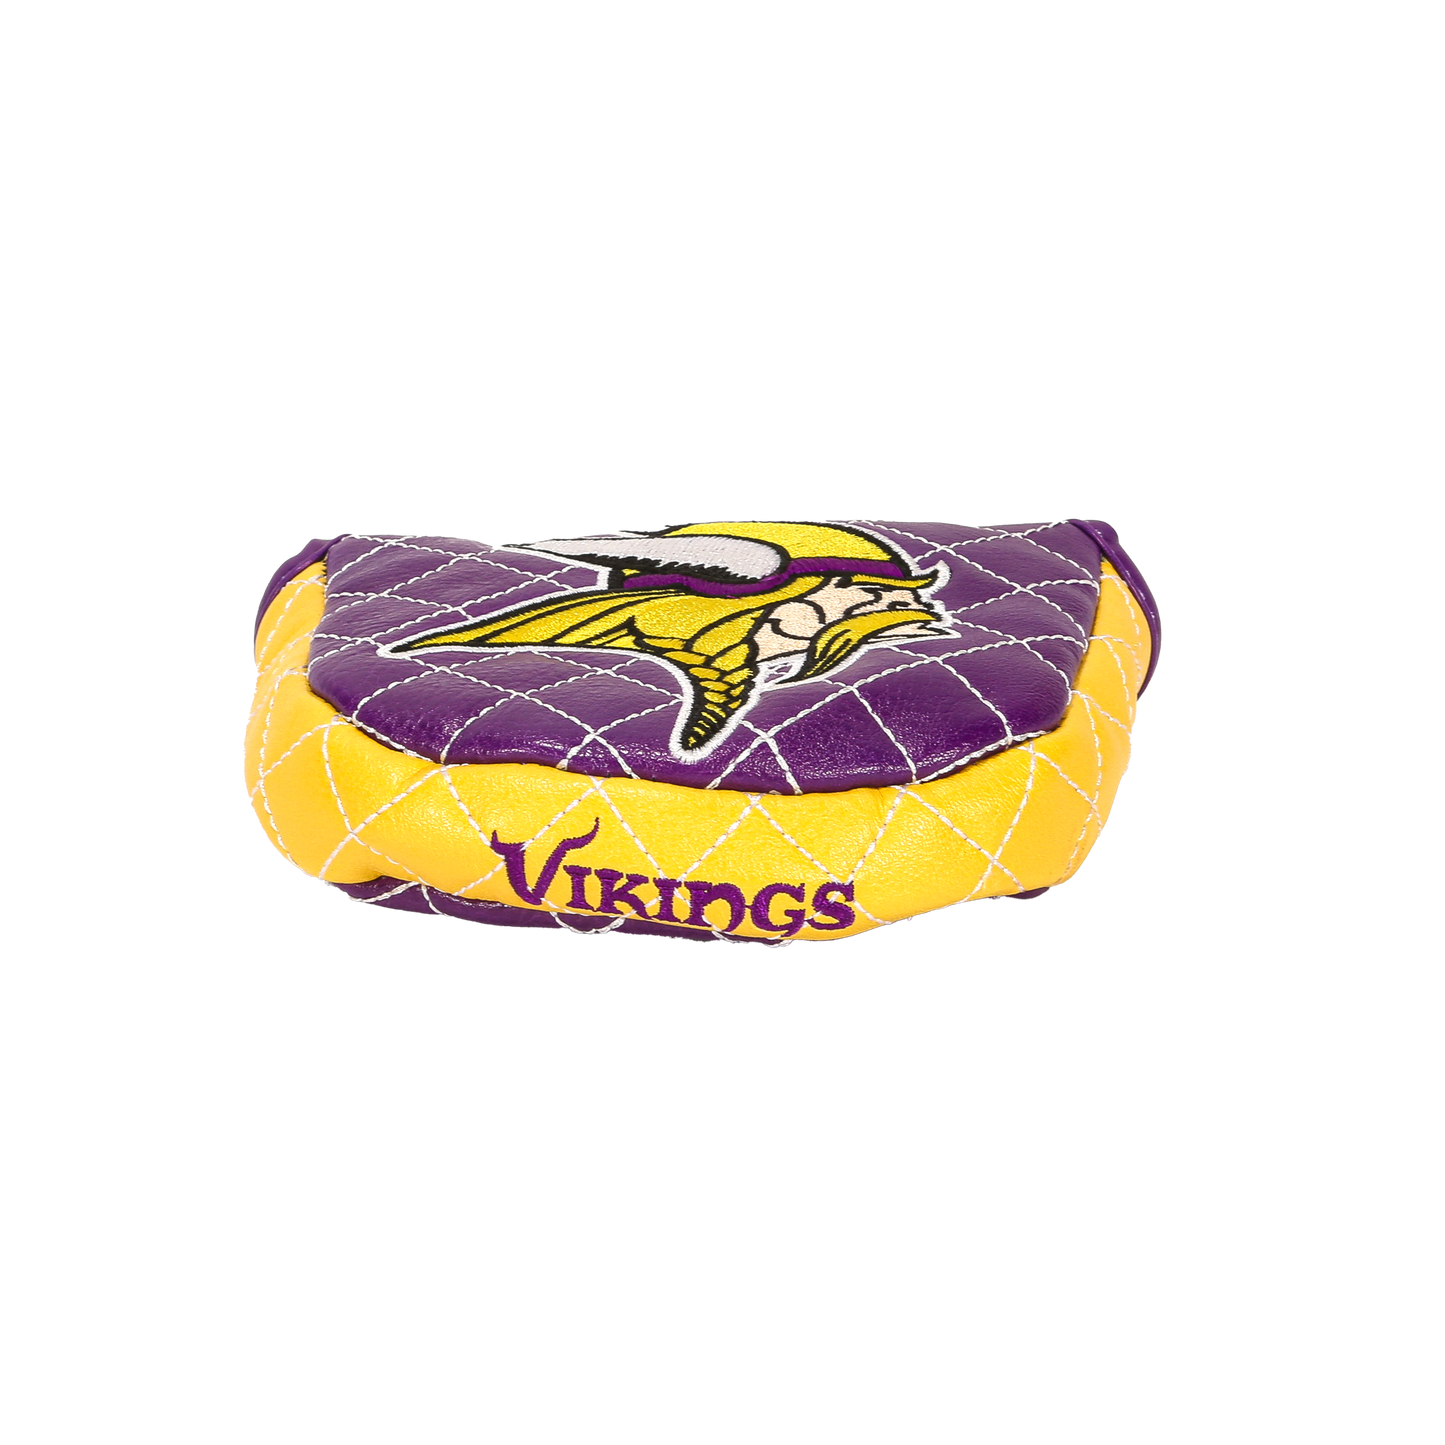 Minnesota "Vikings" Mallet Putter Cover